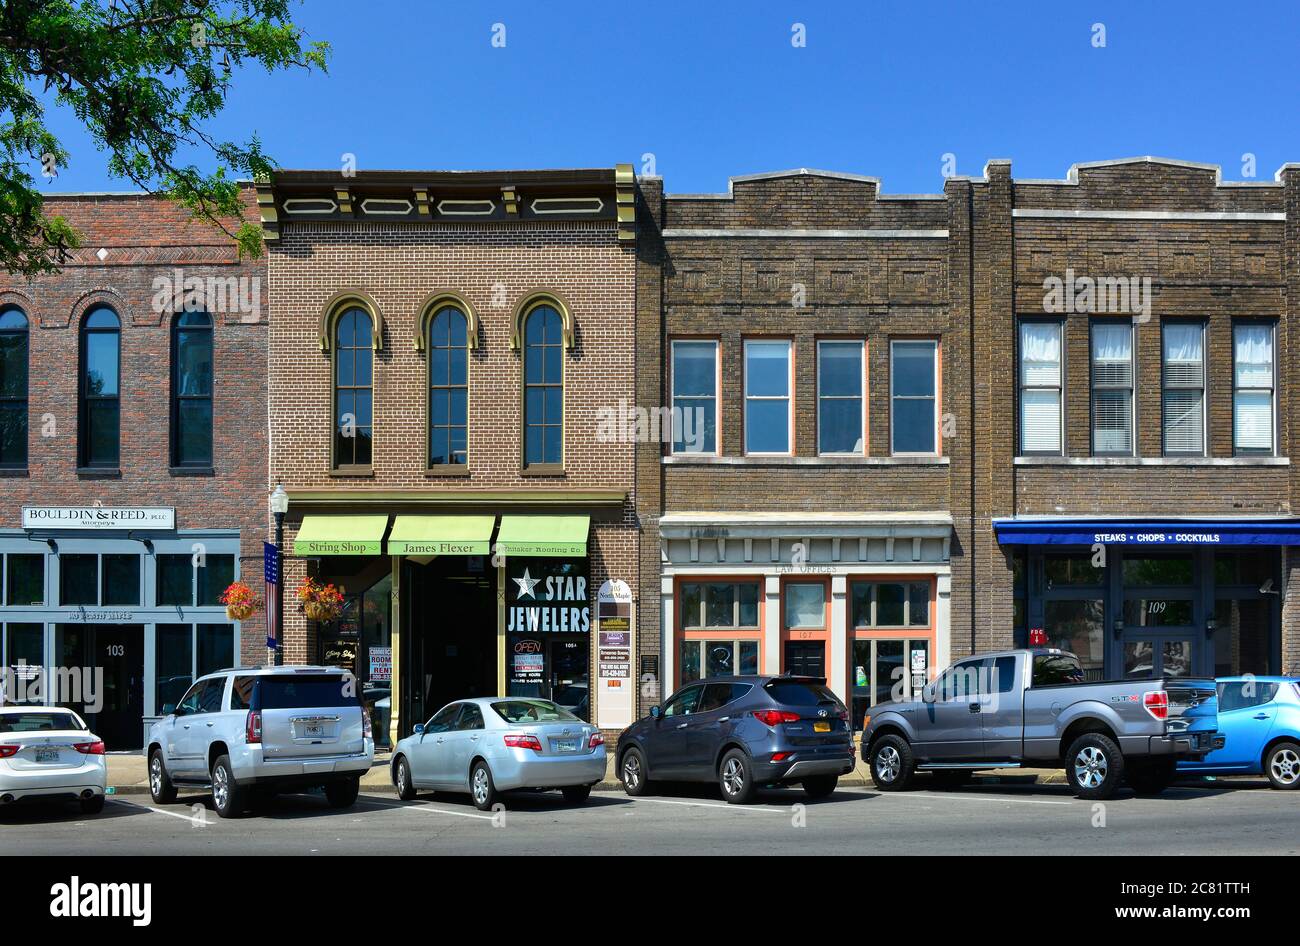 Una pequeña plaza típica americana con coches estacionados a lo largo de los edificios históricos que ahora alberga tiendas de moda y restaurantes en Murfreesboro, TN Foto de stock